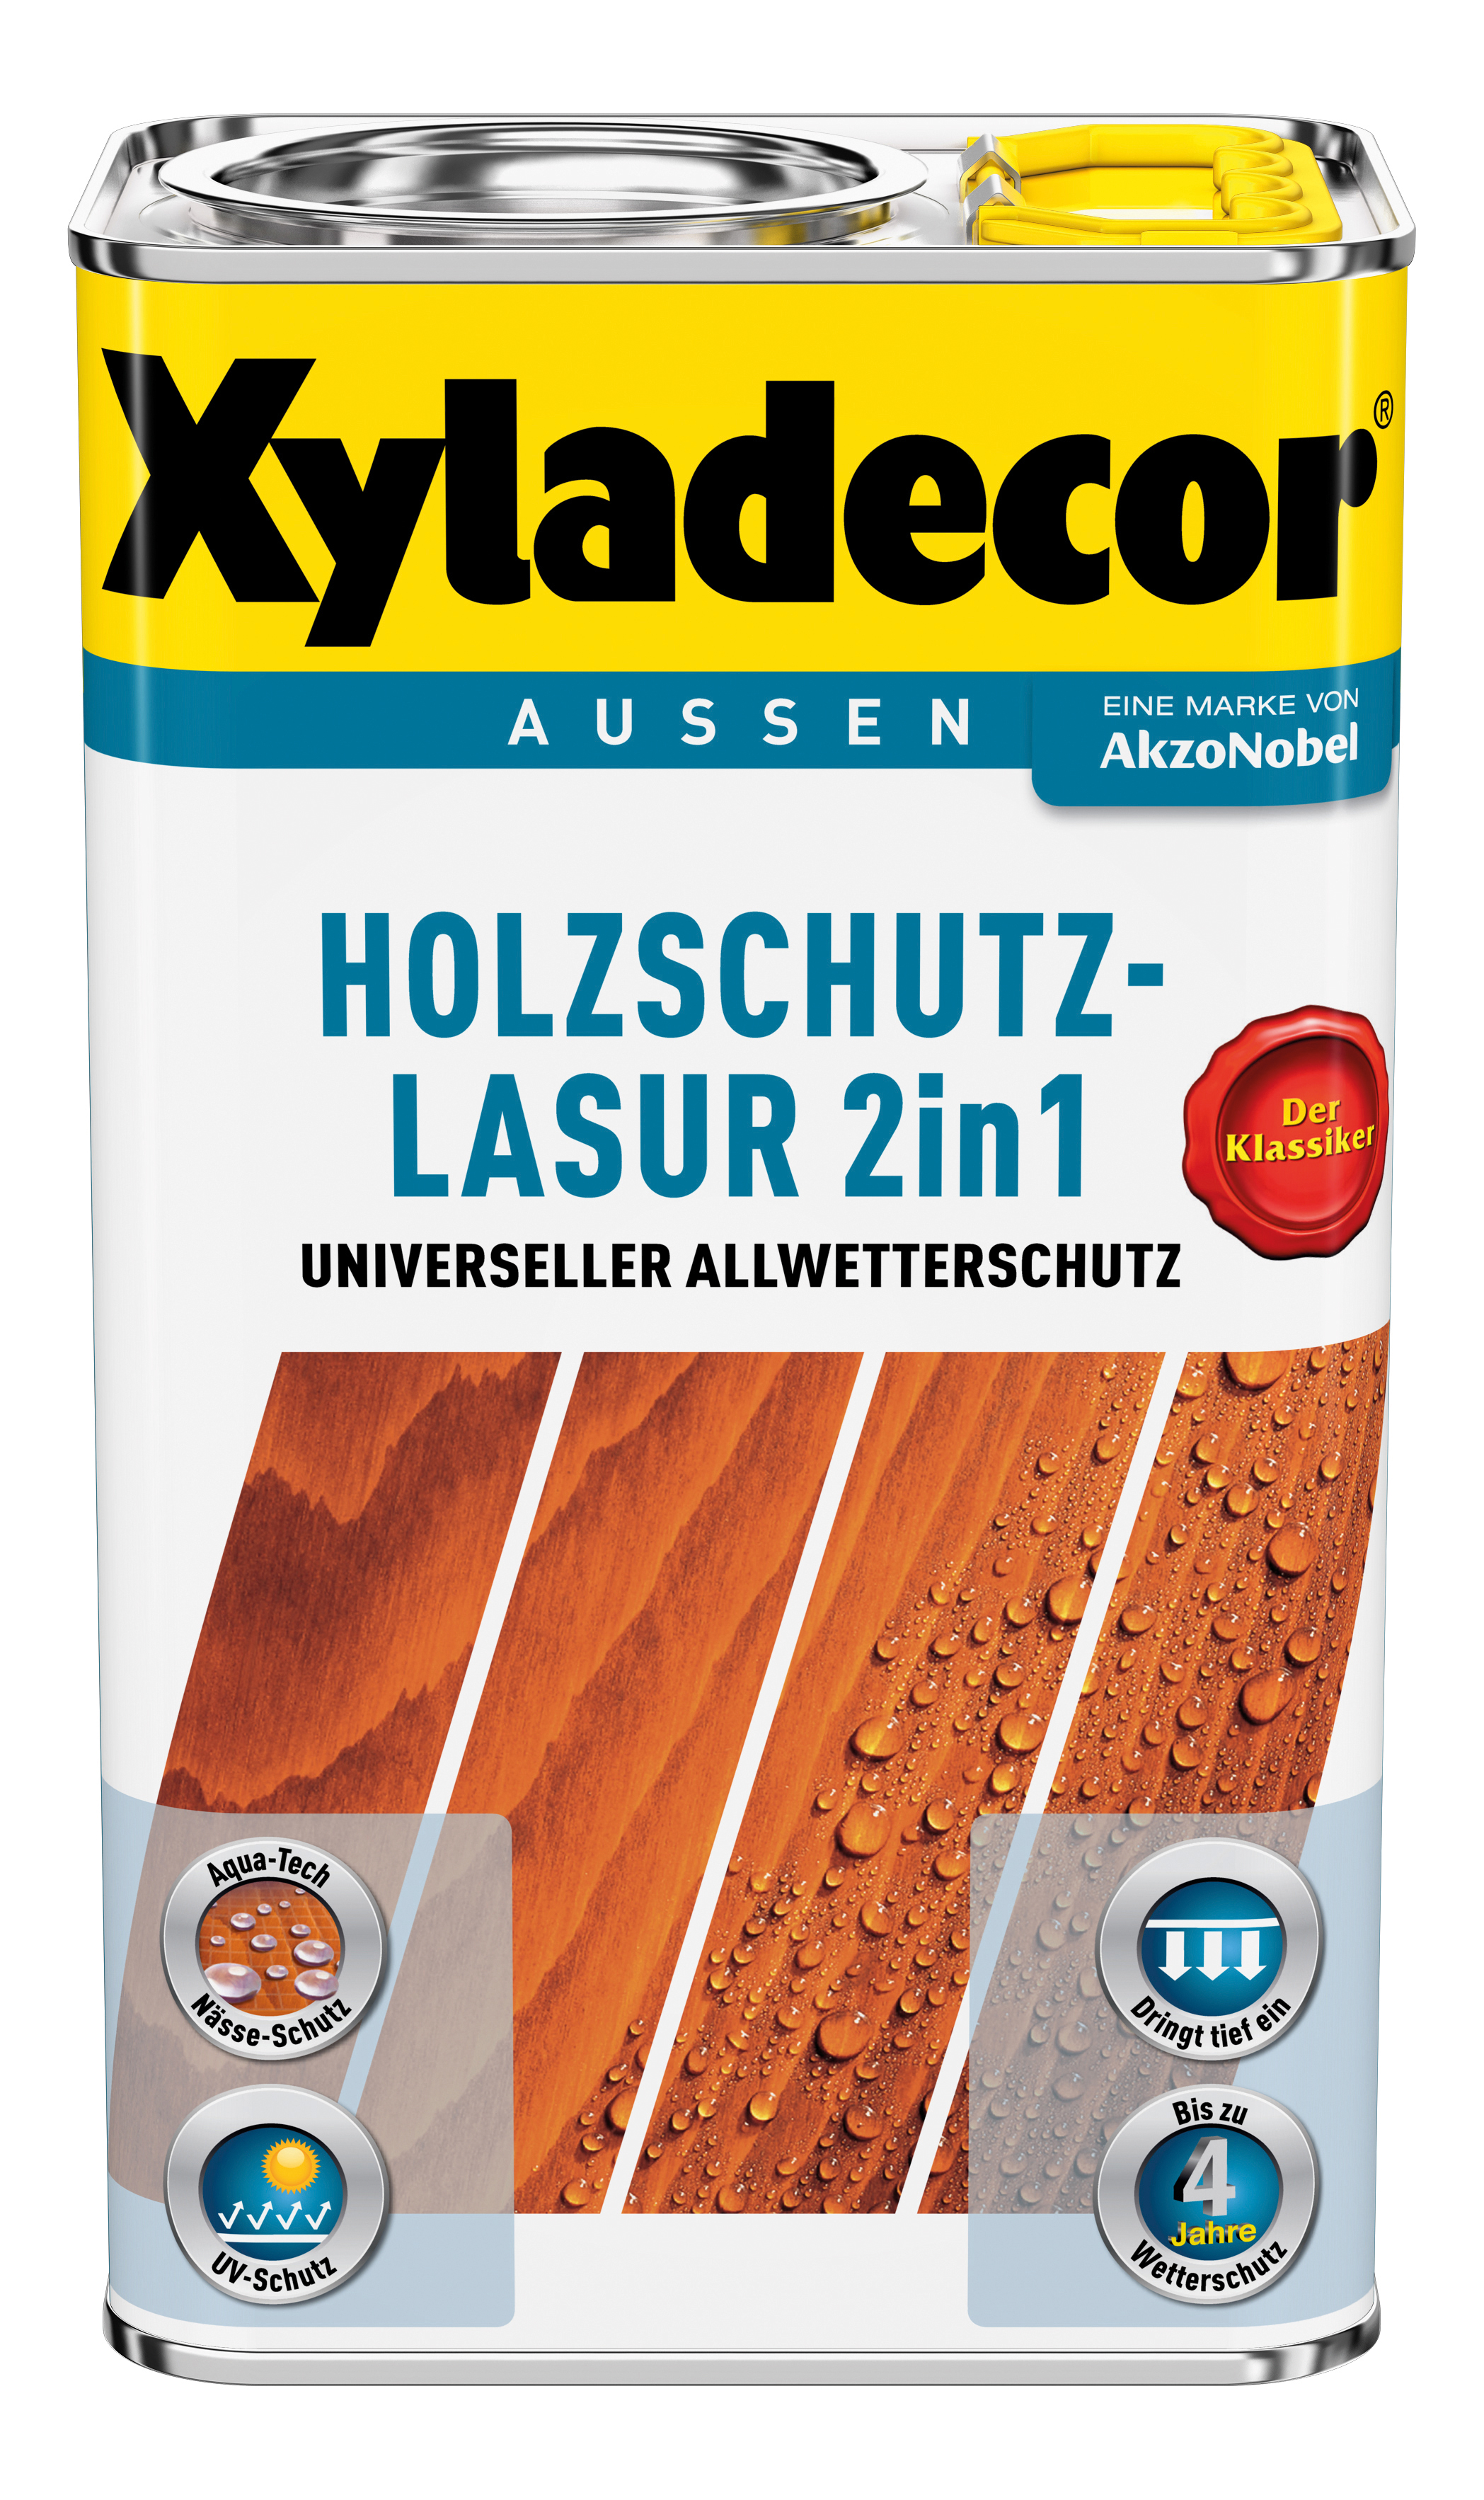 AKZO NOBEL DECO Holzschutzlasur lh palisander 2,5L Xyladecor